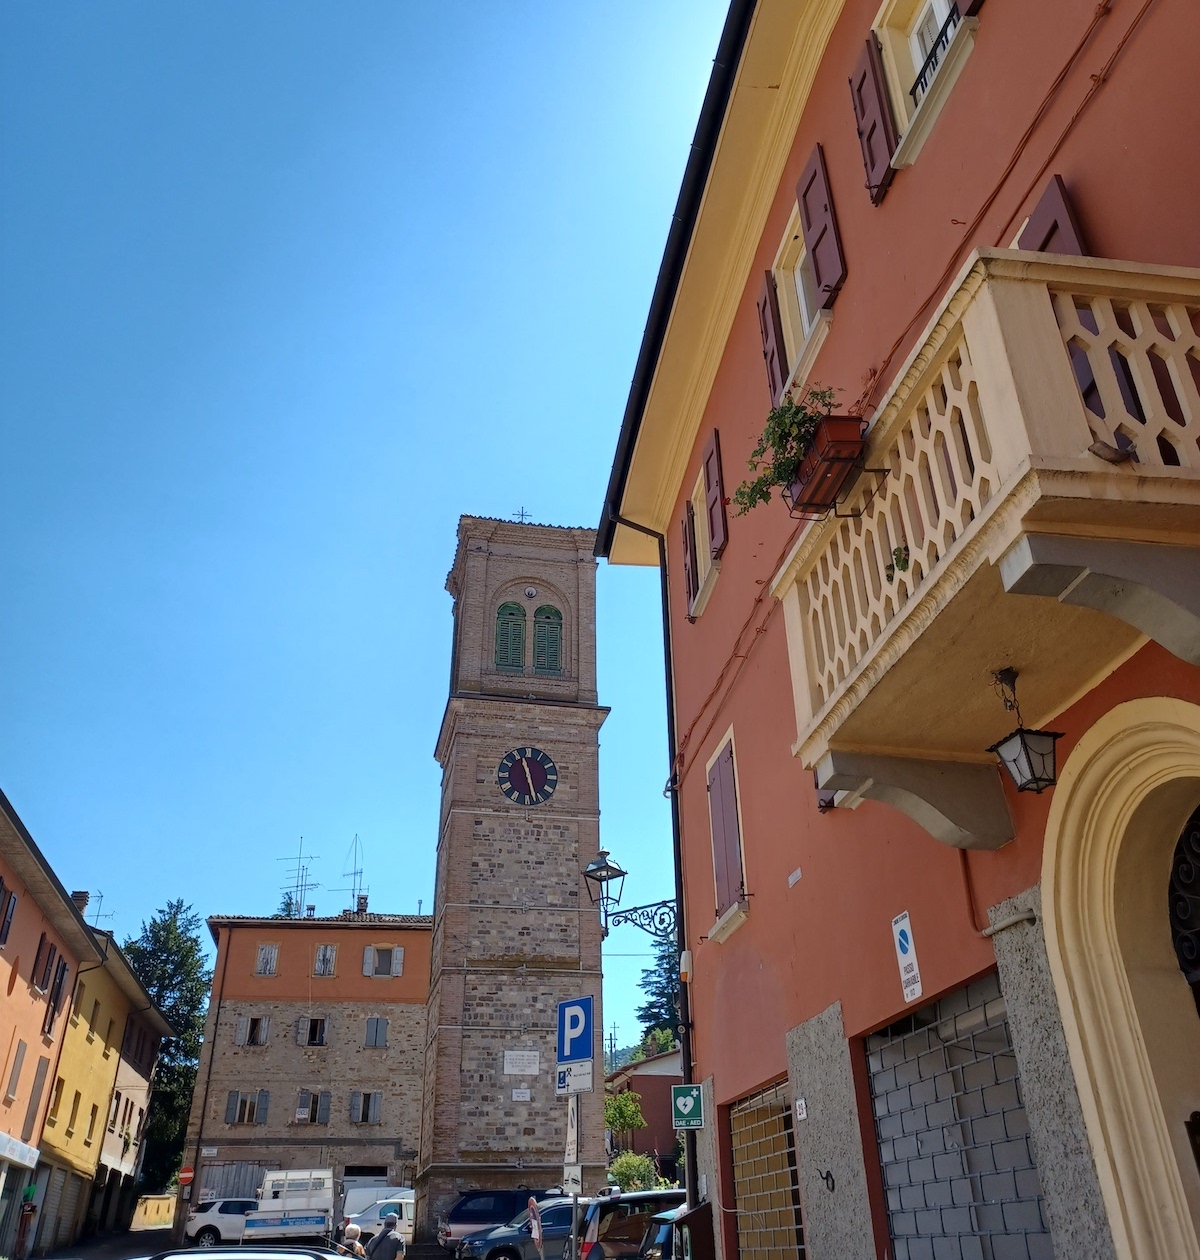 Valsamoggia (BO), Savigno – Campanile e Torre dell’Orologio, ph. Nadia Galli, CC_BY_NC_SA 3.0